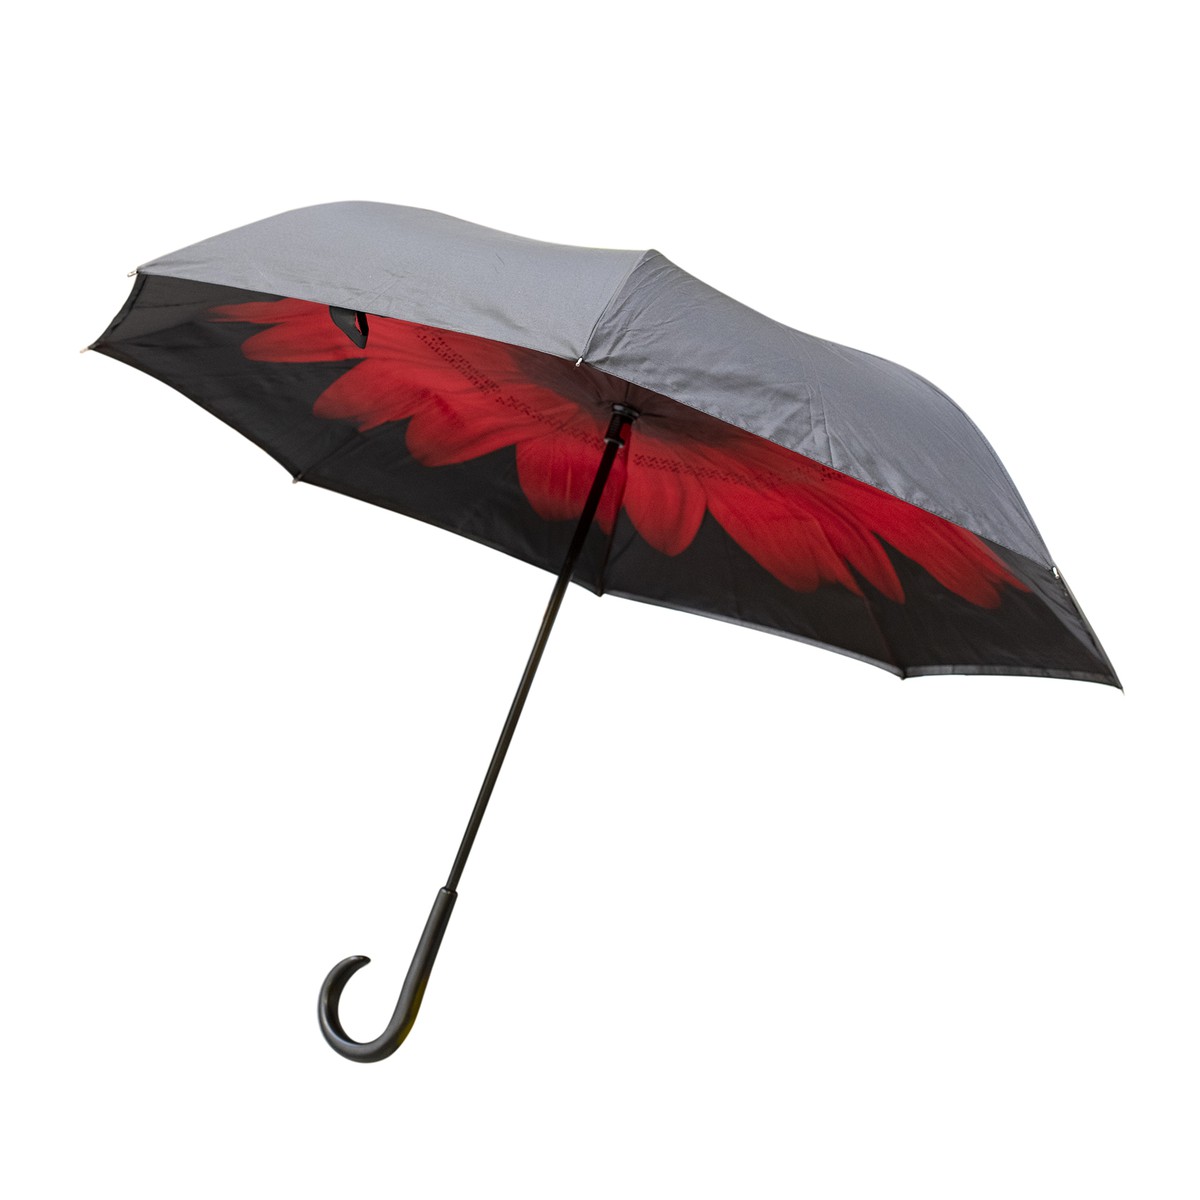   Parapluie Honfleur  